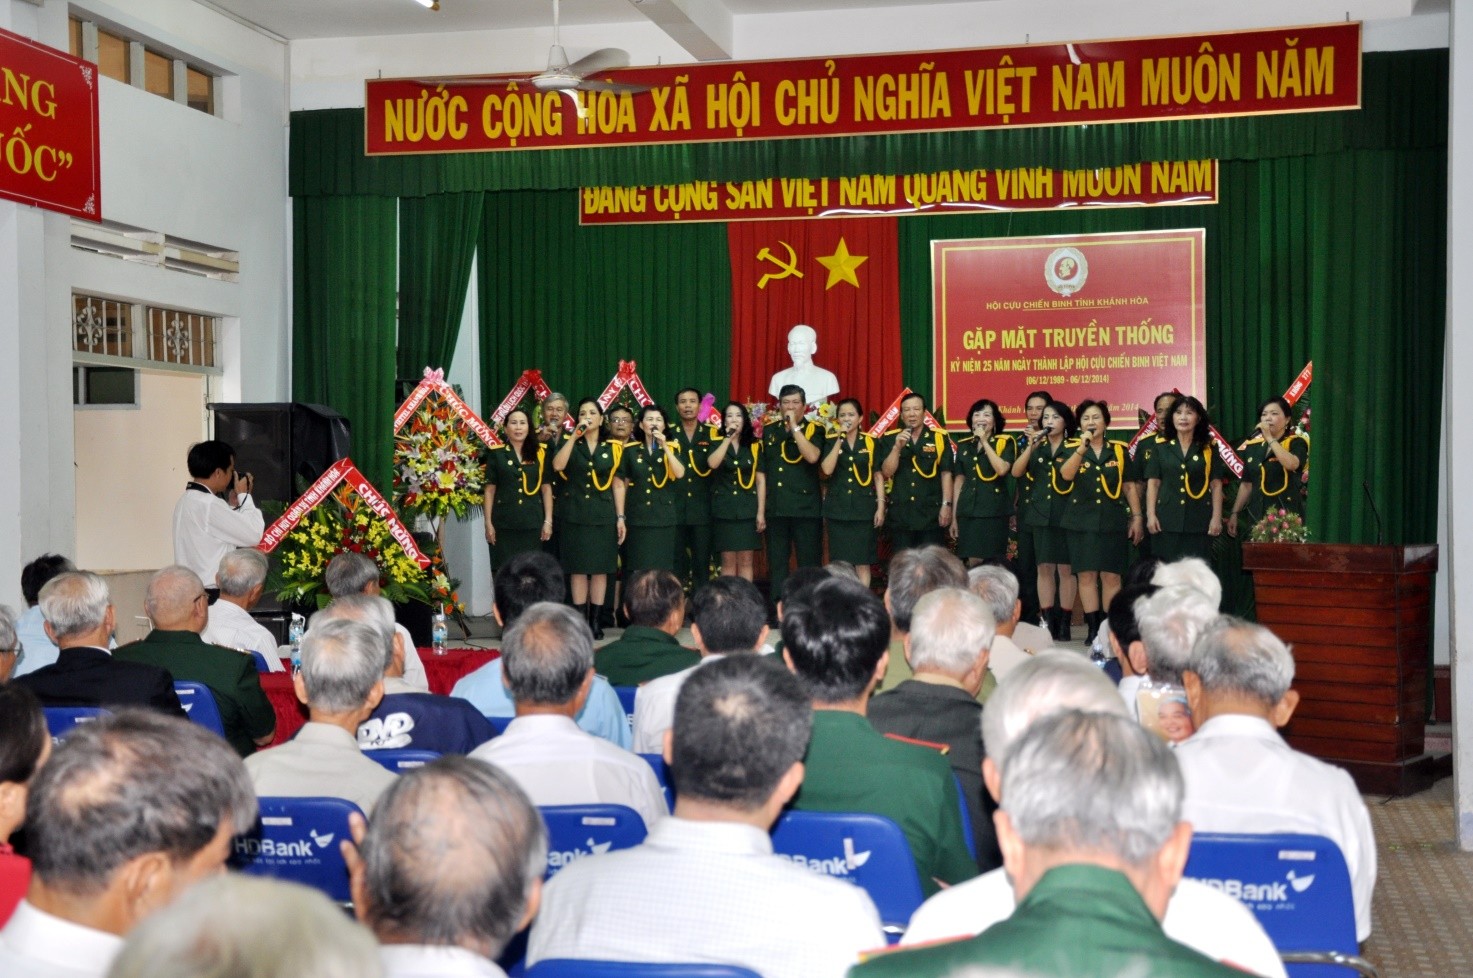 Chương trình biểu diễn phục vụ Gặp mặt Truyền thống Hội CCB Khánh Hòa